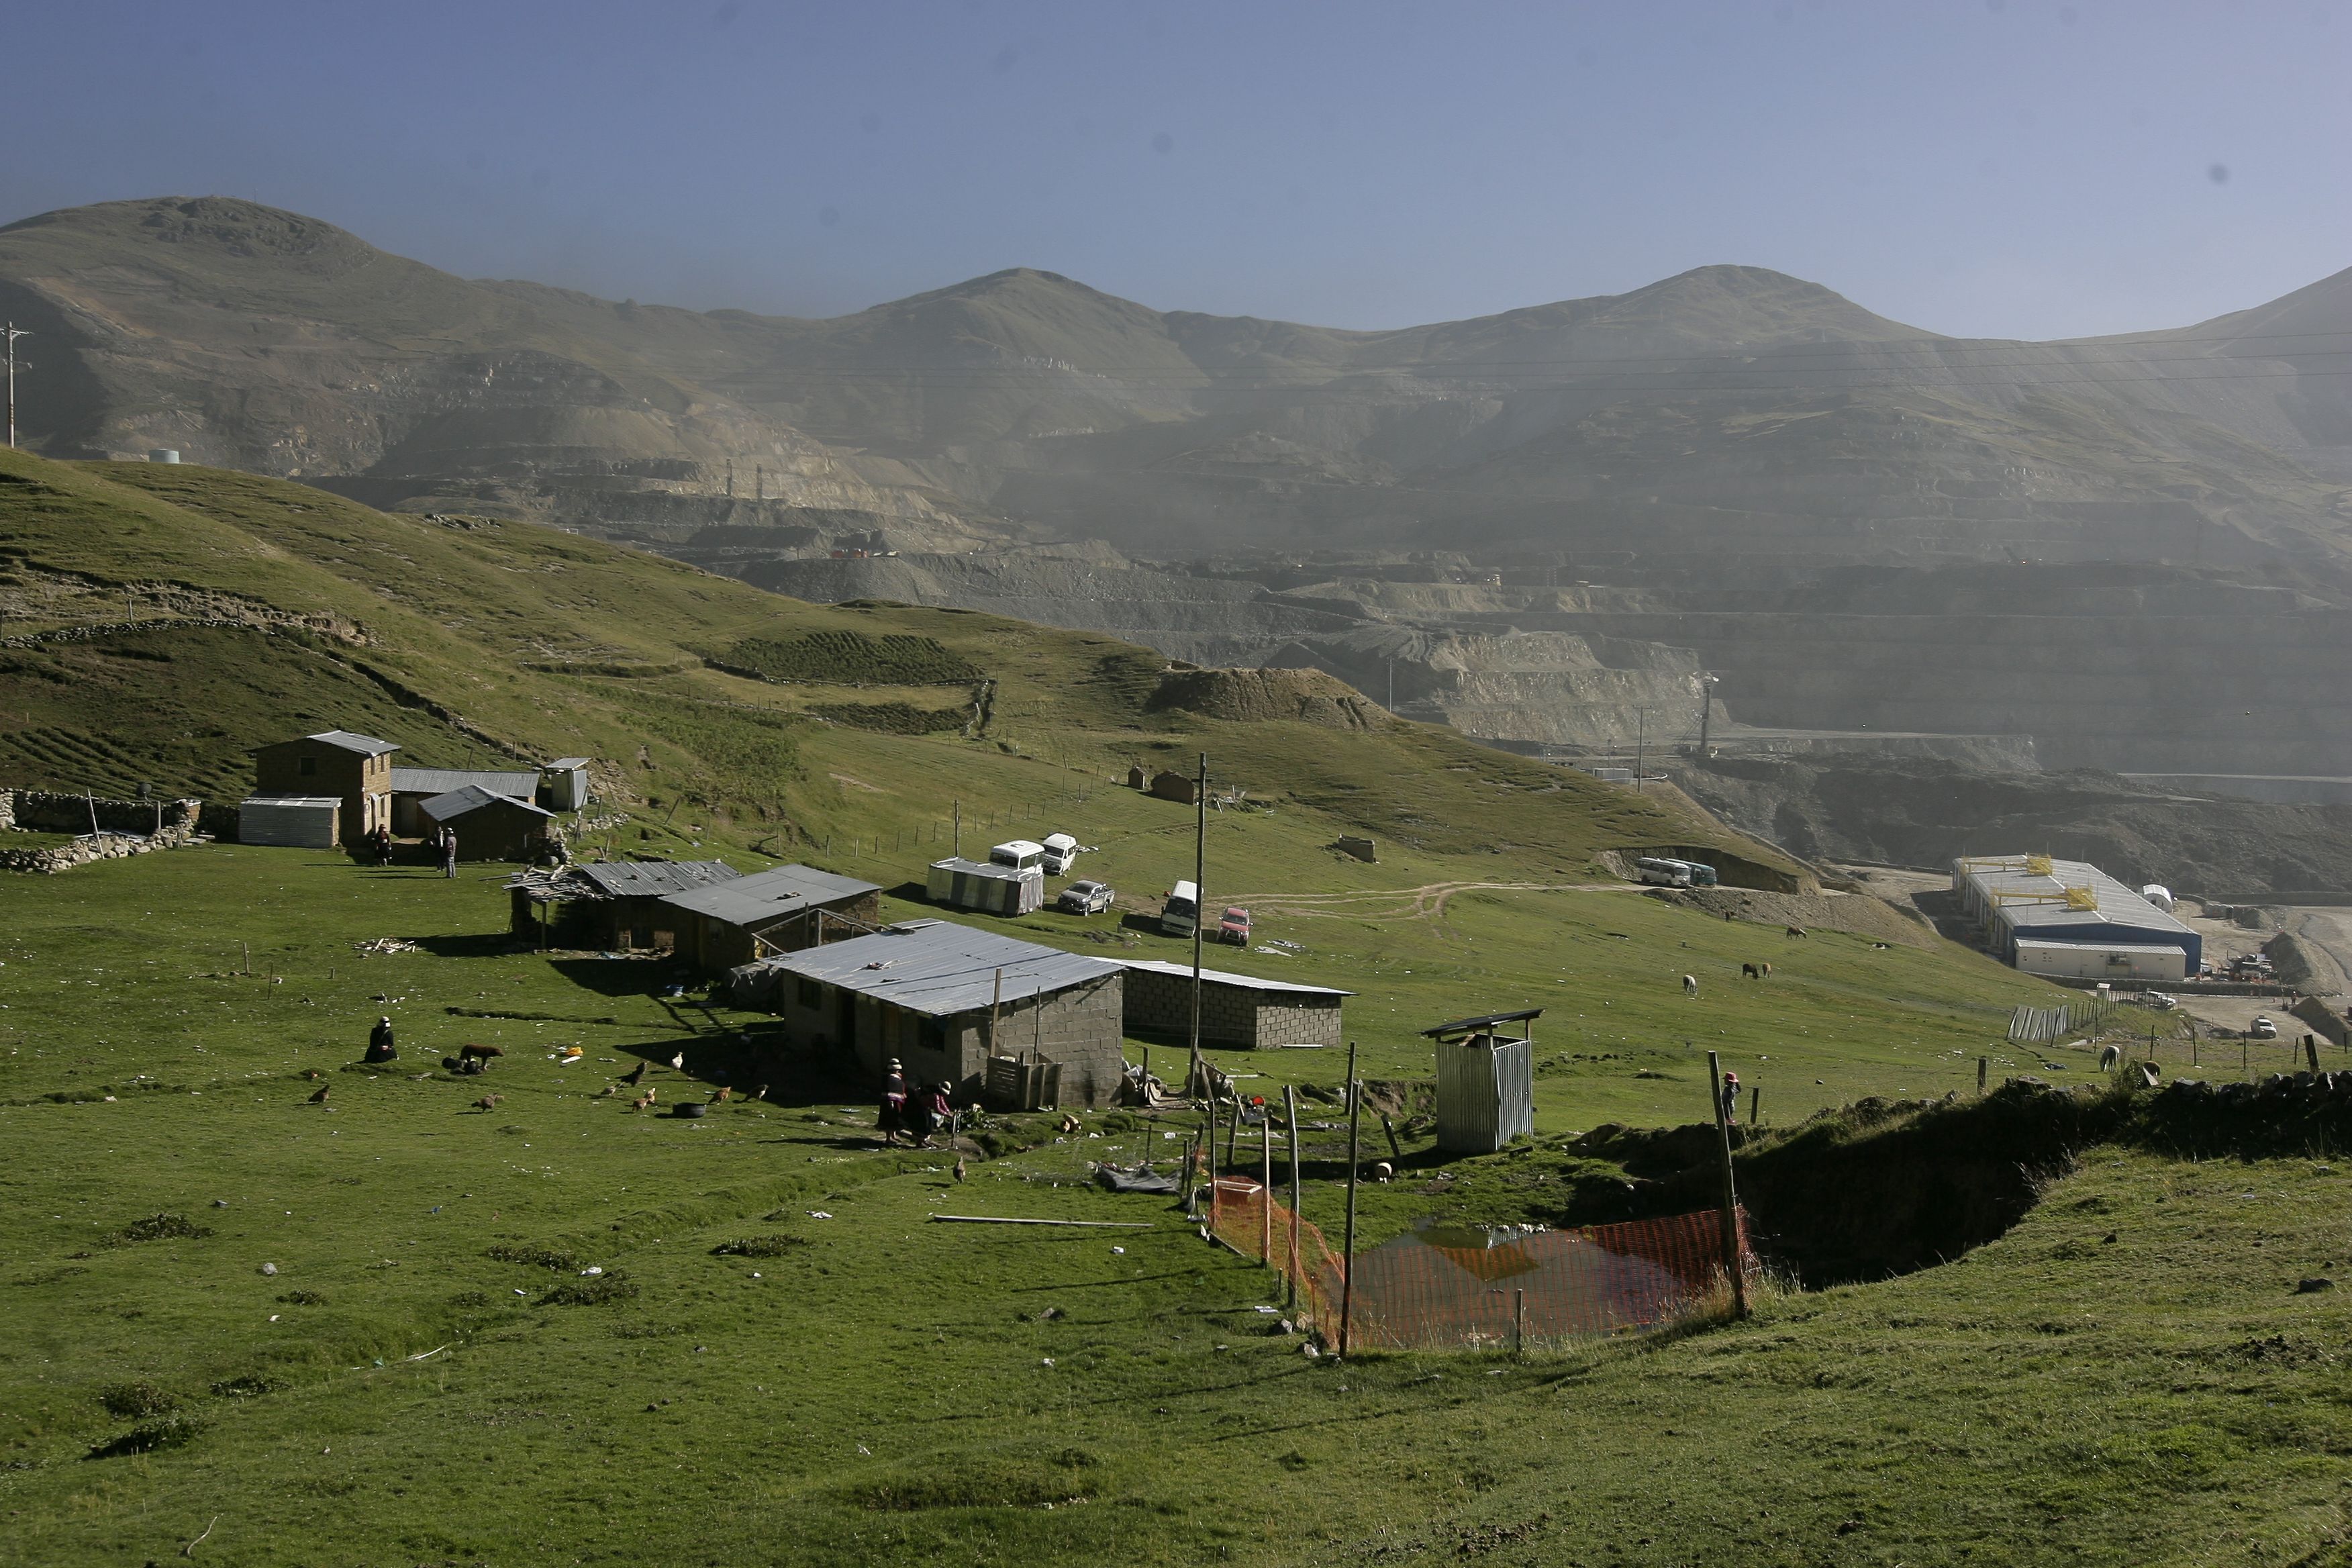 Operaciones del proyecto minero Antapaccay, que hoy opera Glencore. Foto: Miguel Mejía - La República.